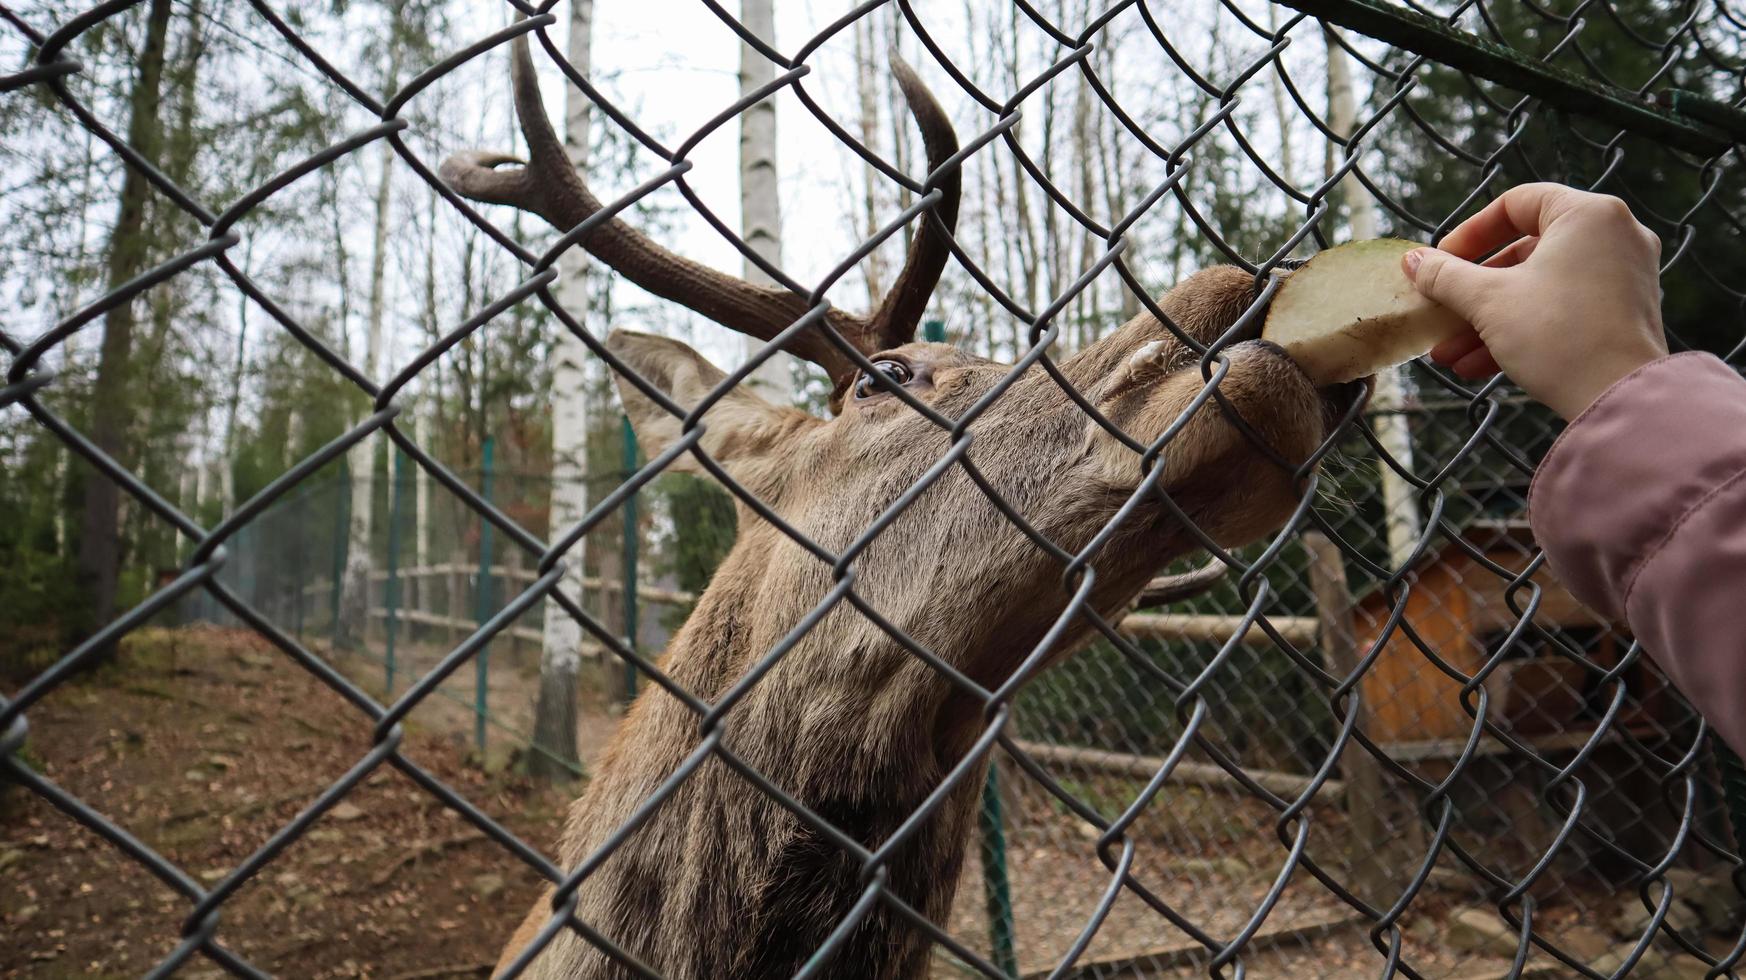 en kvinna matar ett rådjur med horn genom ett staket i en djurpark. rådjur äter sockerbetor från en kvinnlig hand. foto